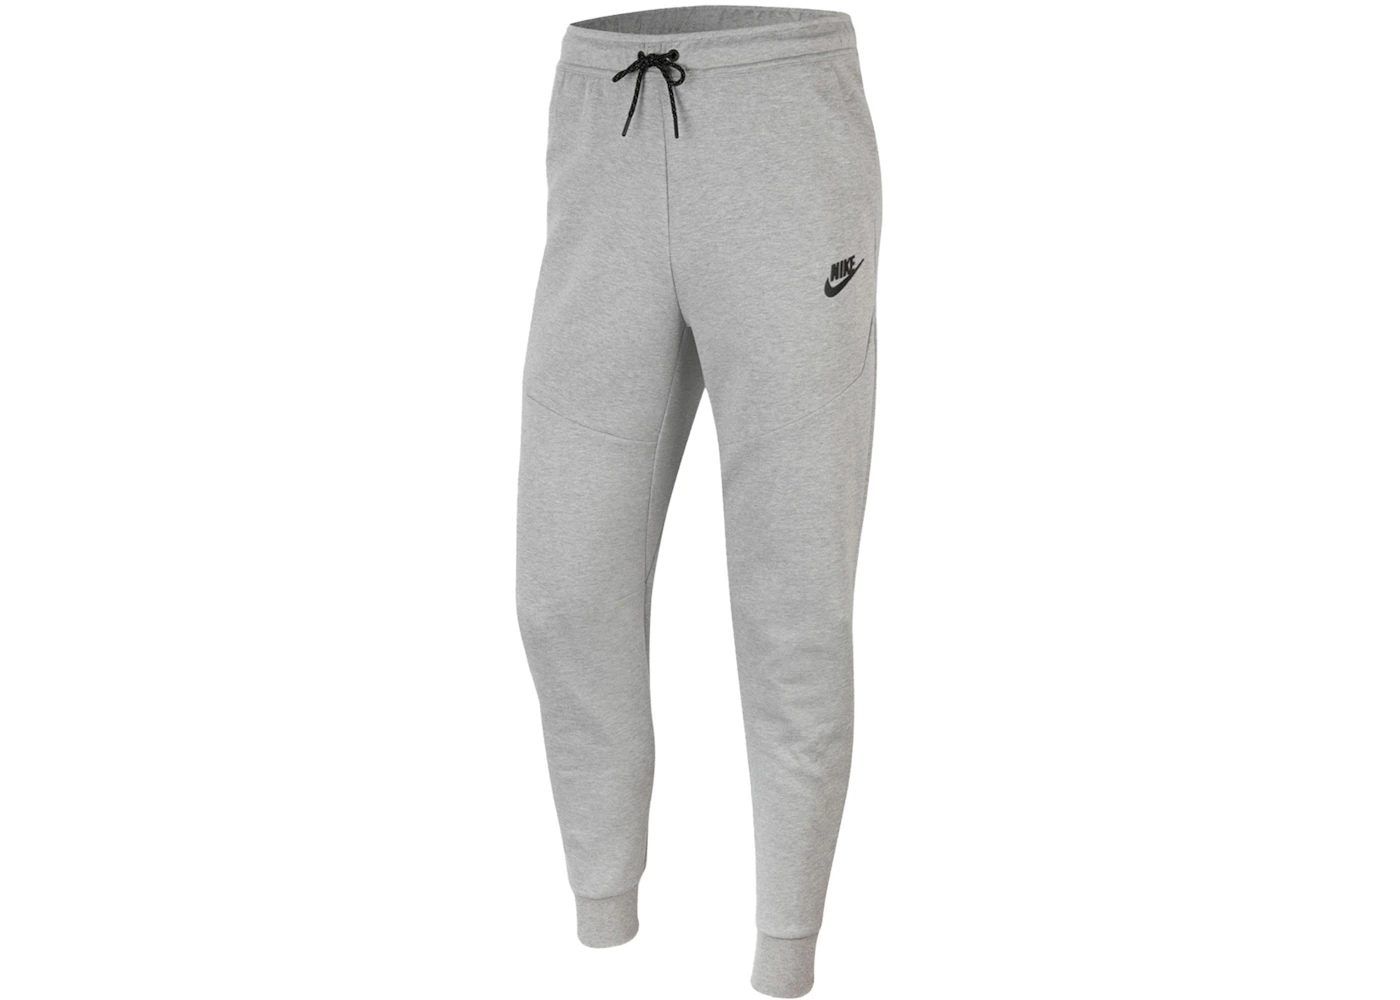 Nike Sportswear Tech Fleece Joggers Grey/Black Men's - FW22 - US